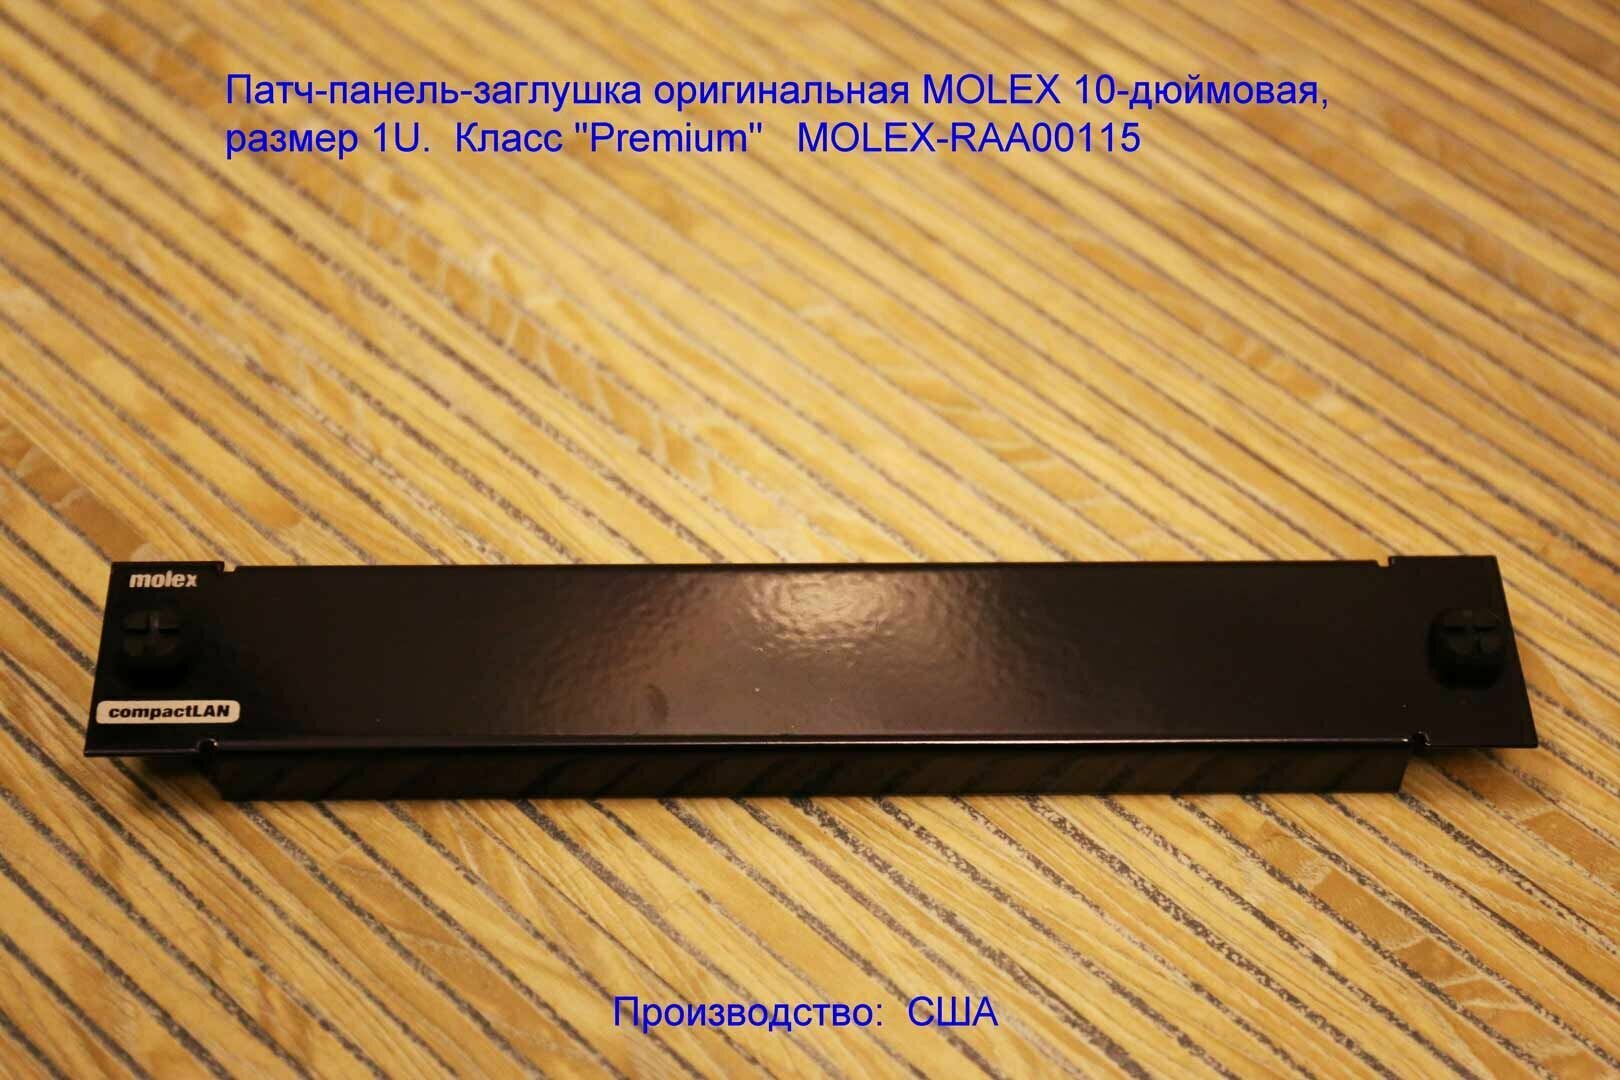 Патч-панель-заглушка оригинальная MOLEX 10-дюймовая